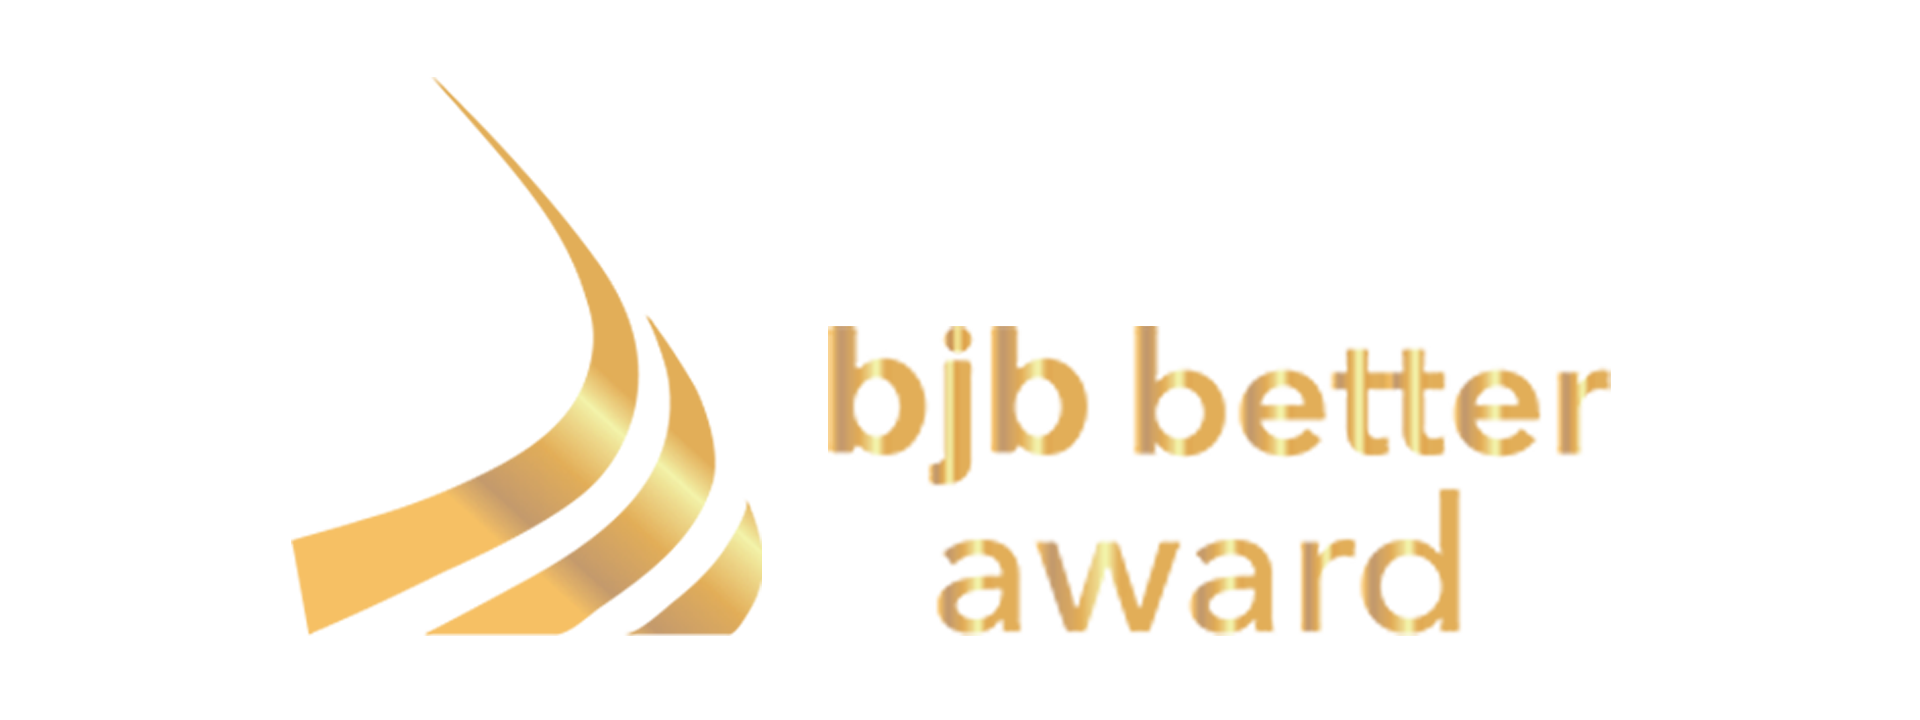 bjb better awards